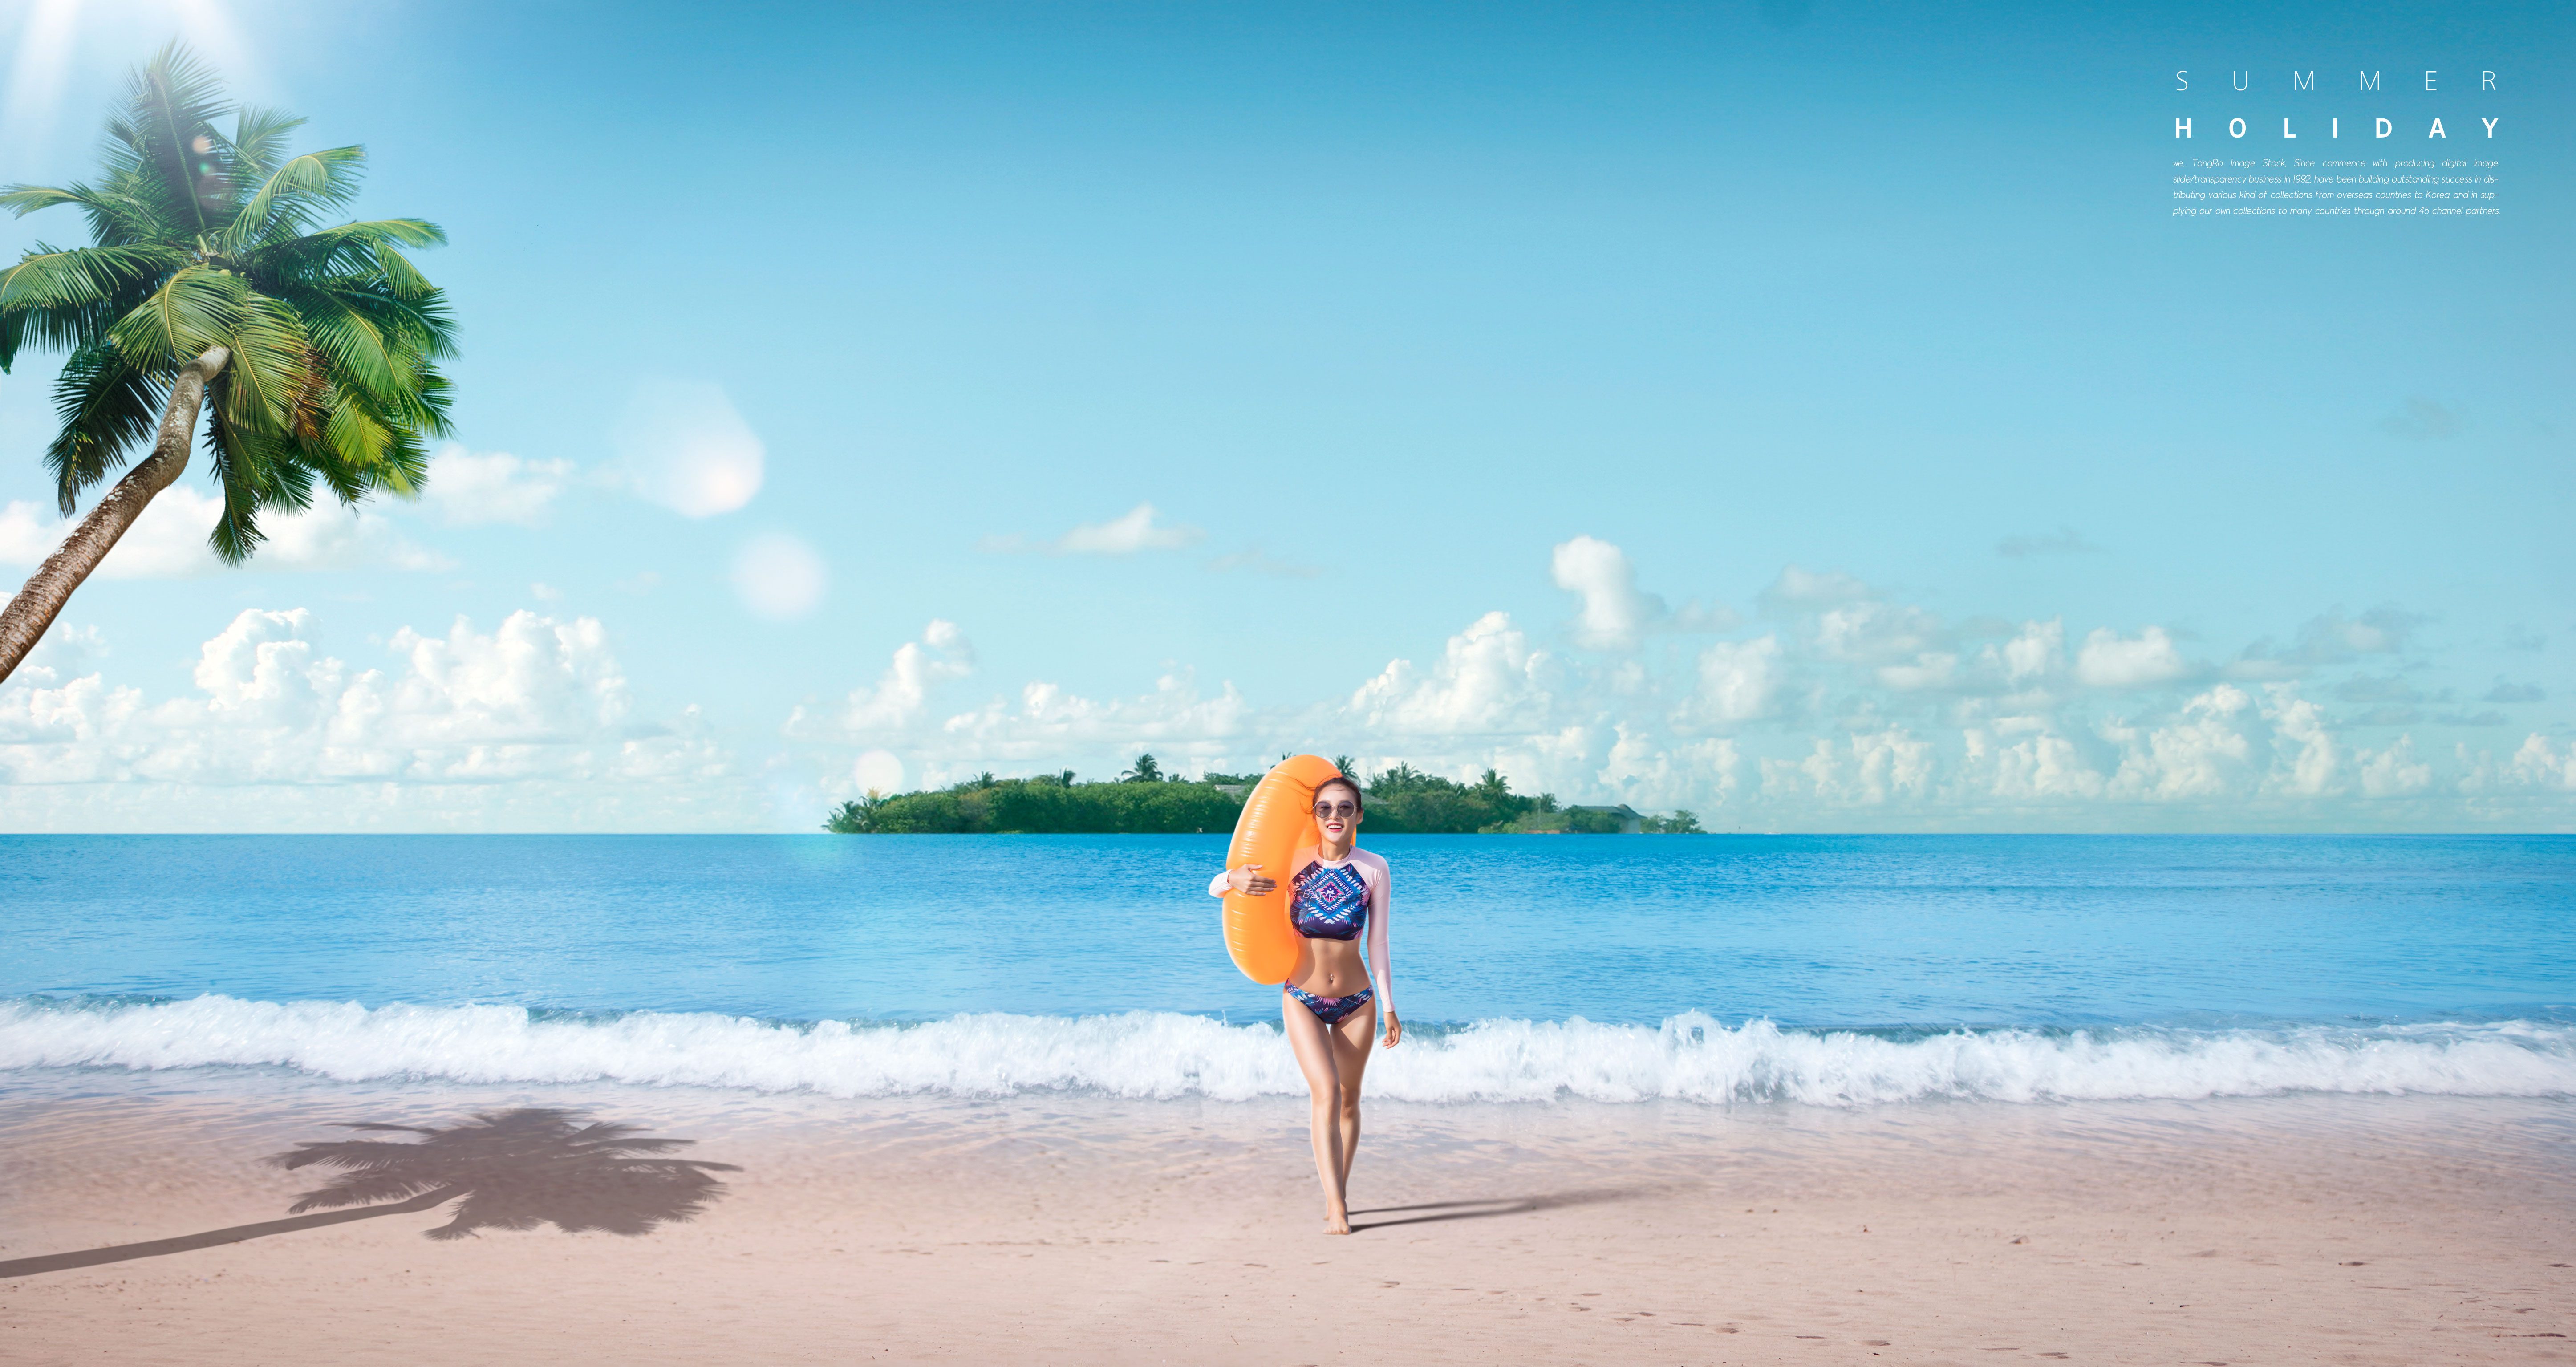 夏季海滩旅行度假活动广告海报模板套装[PSD]插图(5)